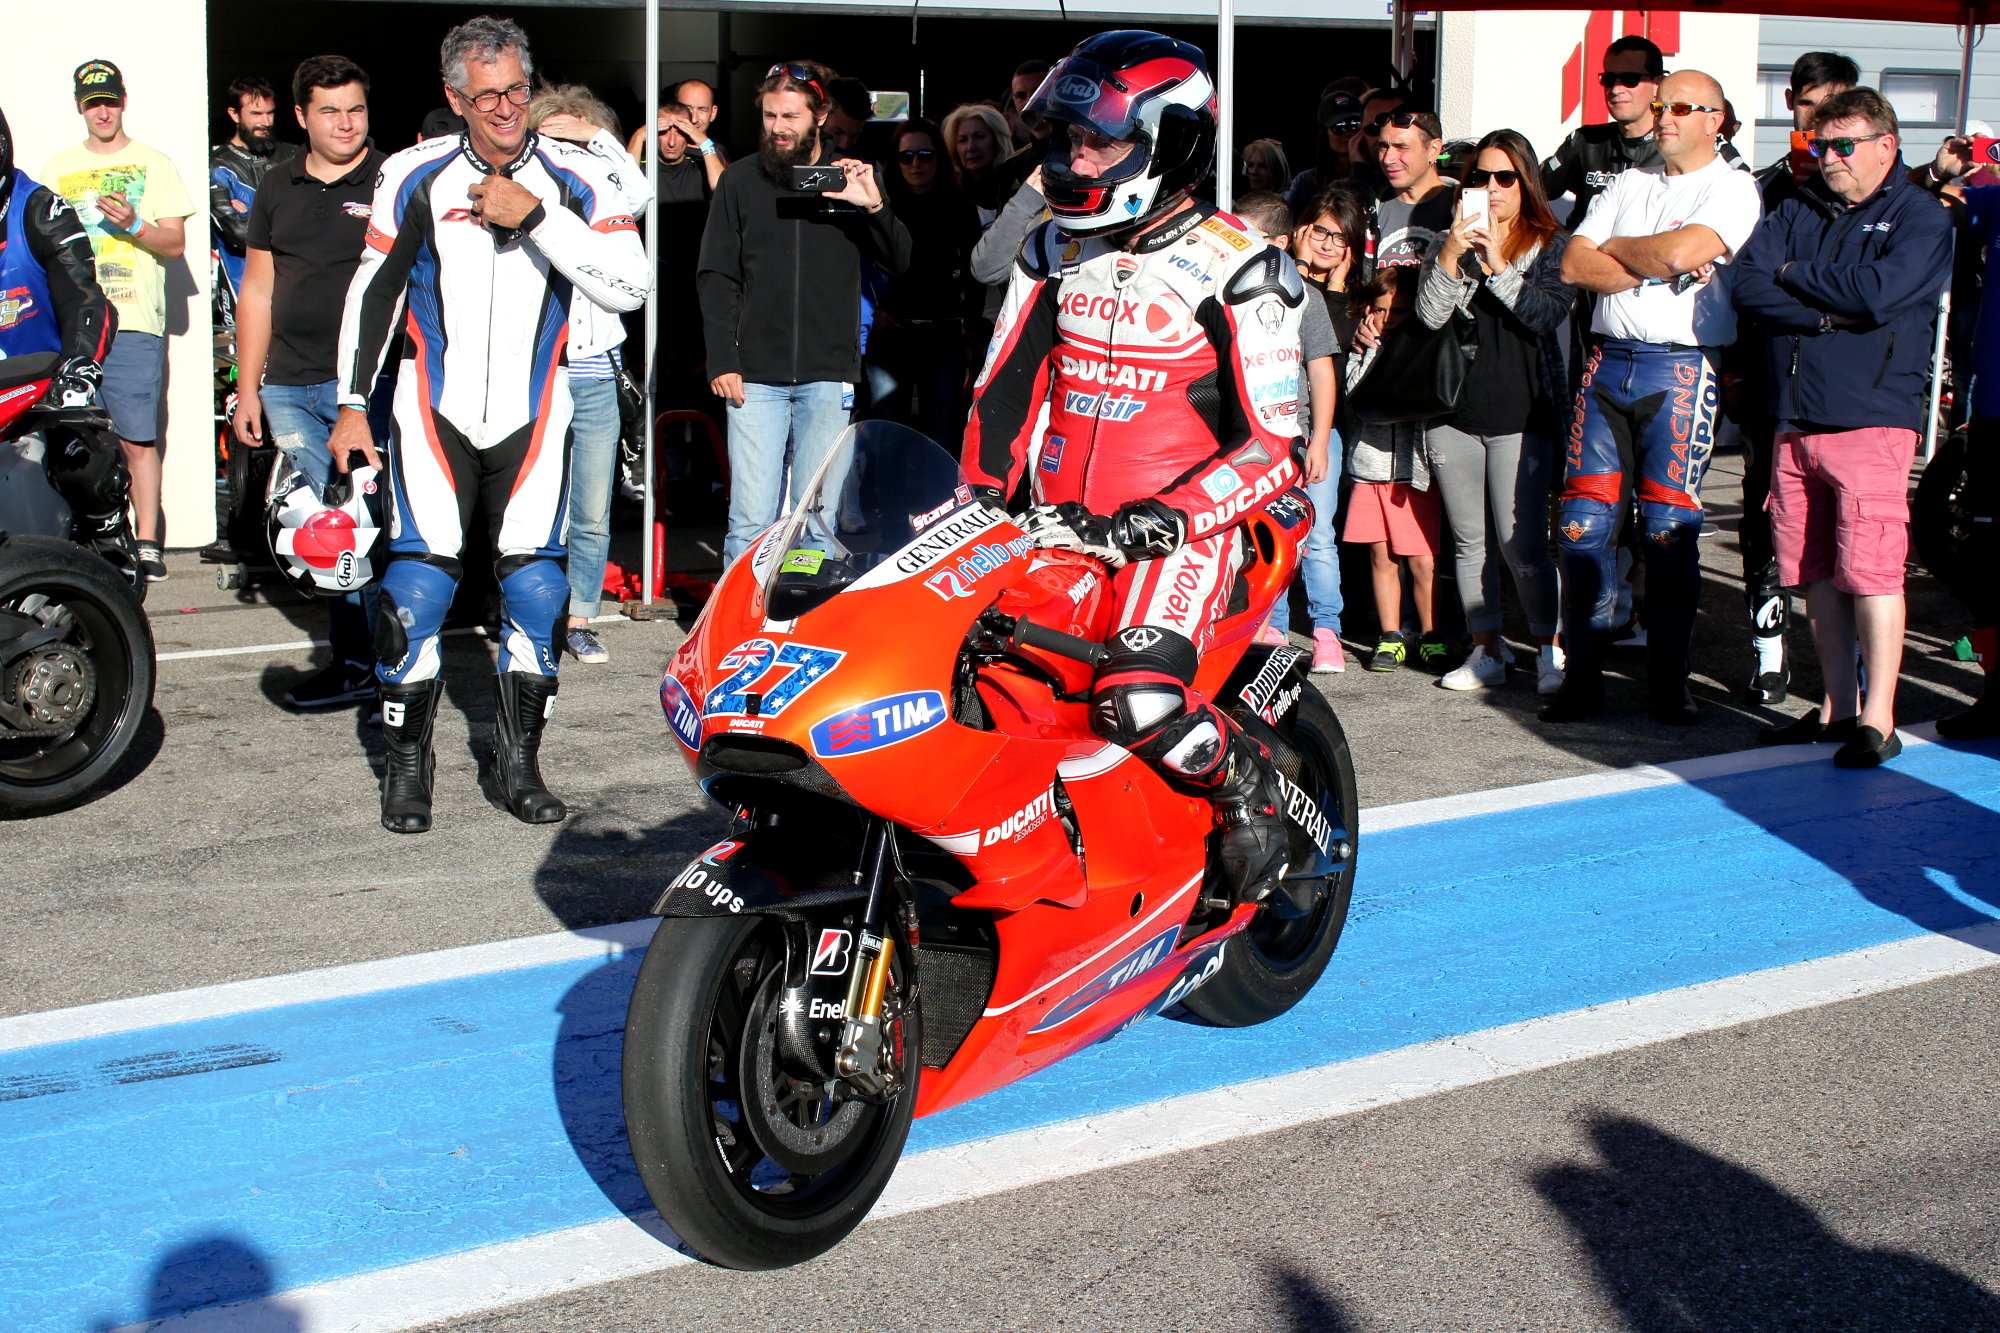 Un collectionneur, propriétaire de cette Ducati de MotoGP ayant été pilotée par Stoner, l'a faite tourner sur le circuit. Mes aïeux, quel son !